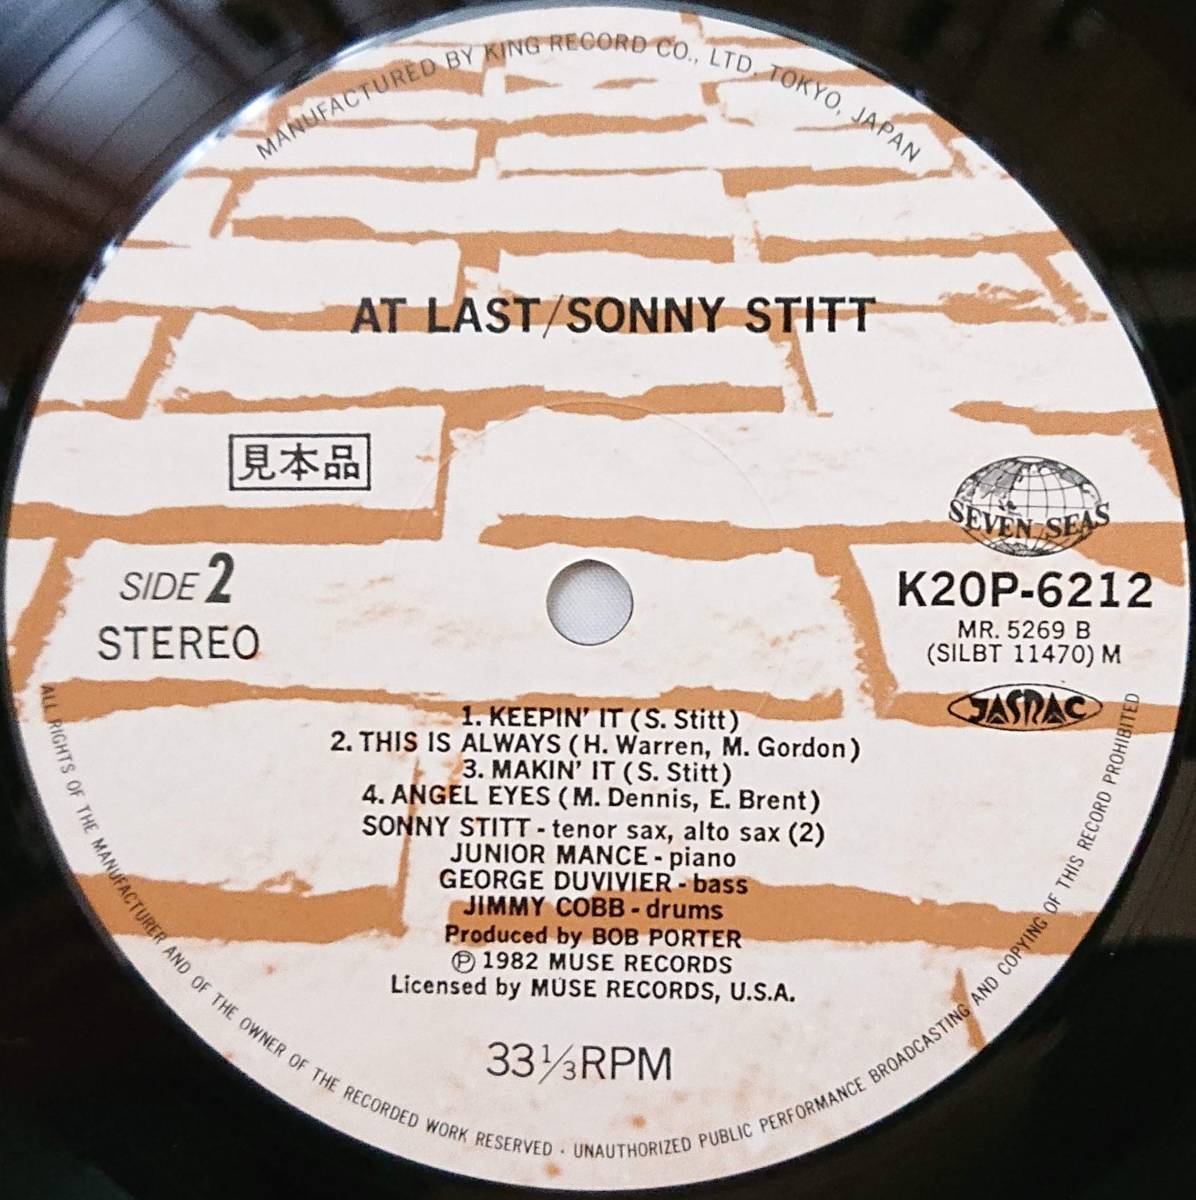 SONNY STITT : AT LAST ソニー・スティット アット・ラスト 見本盤 帯付き 国内盤 中古アナログLPレコード盤 1982年 K20P-6212/3 M2KDO1263_画像2